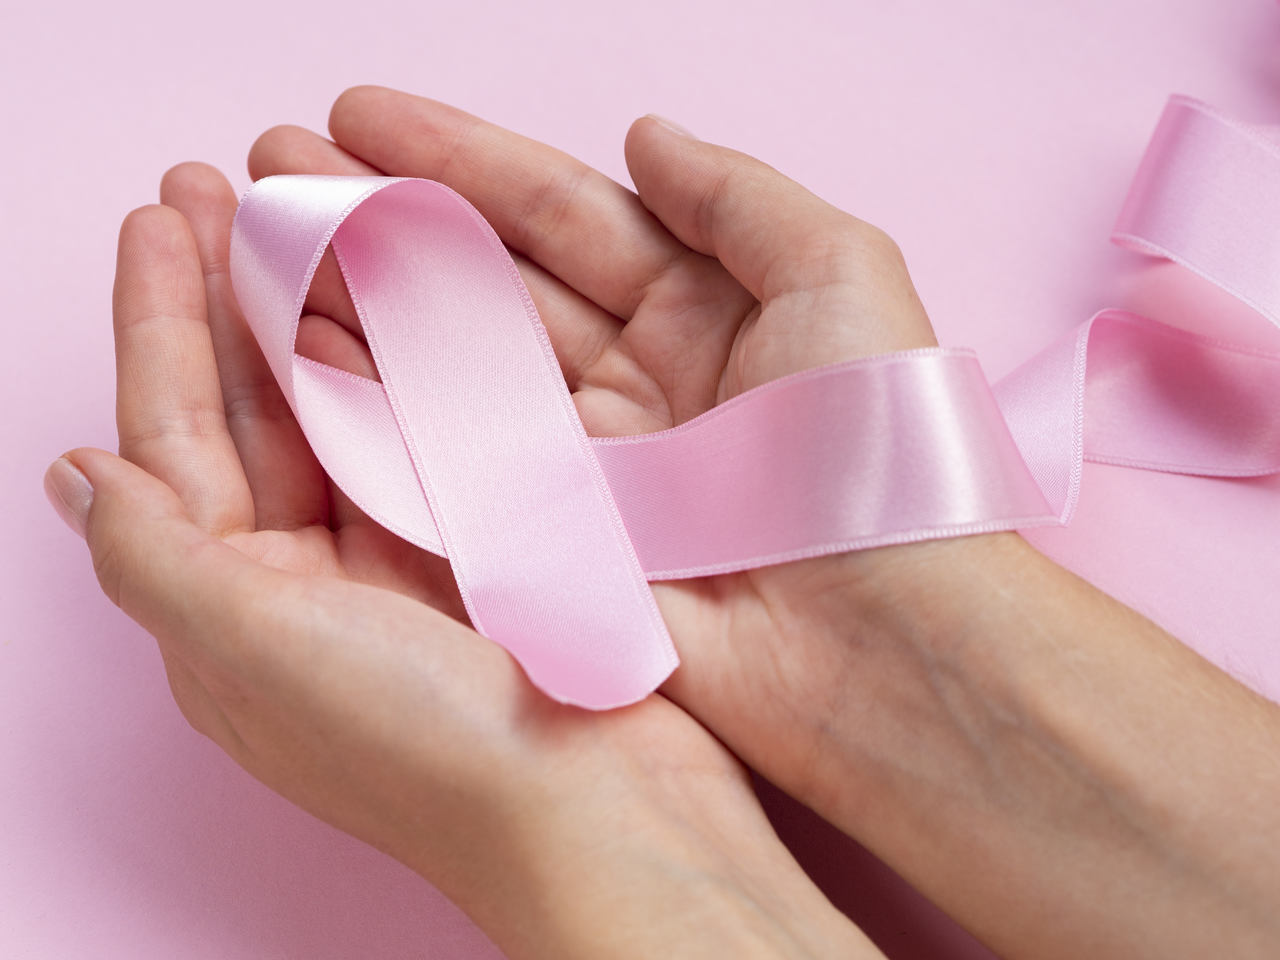 Agência Ideia Goiás - Pesquisa mostra queda em tratamento e diagnóstico de câncer de mama